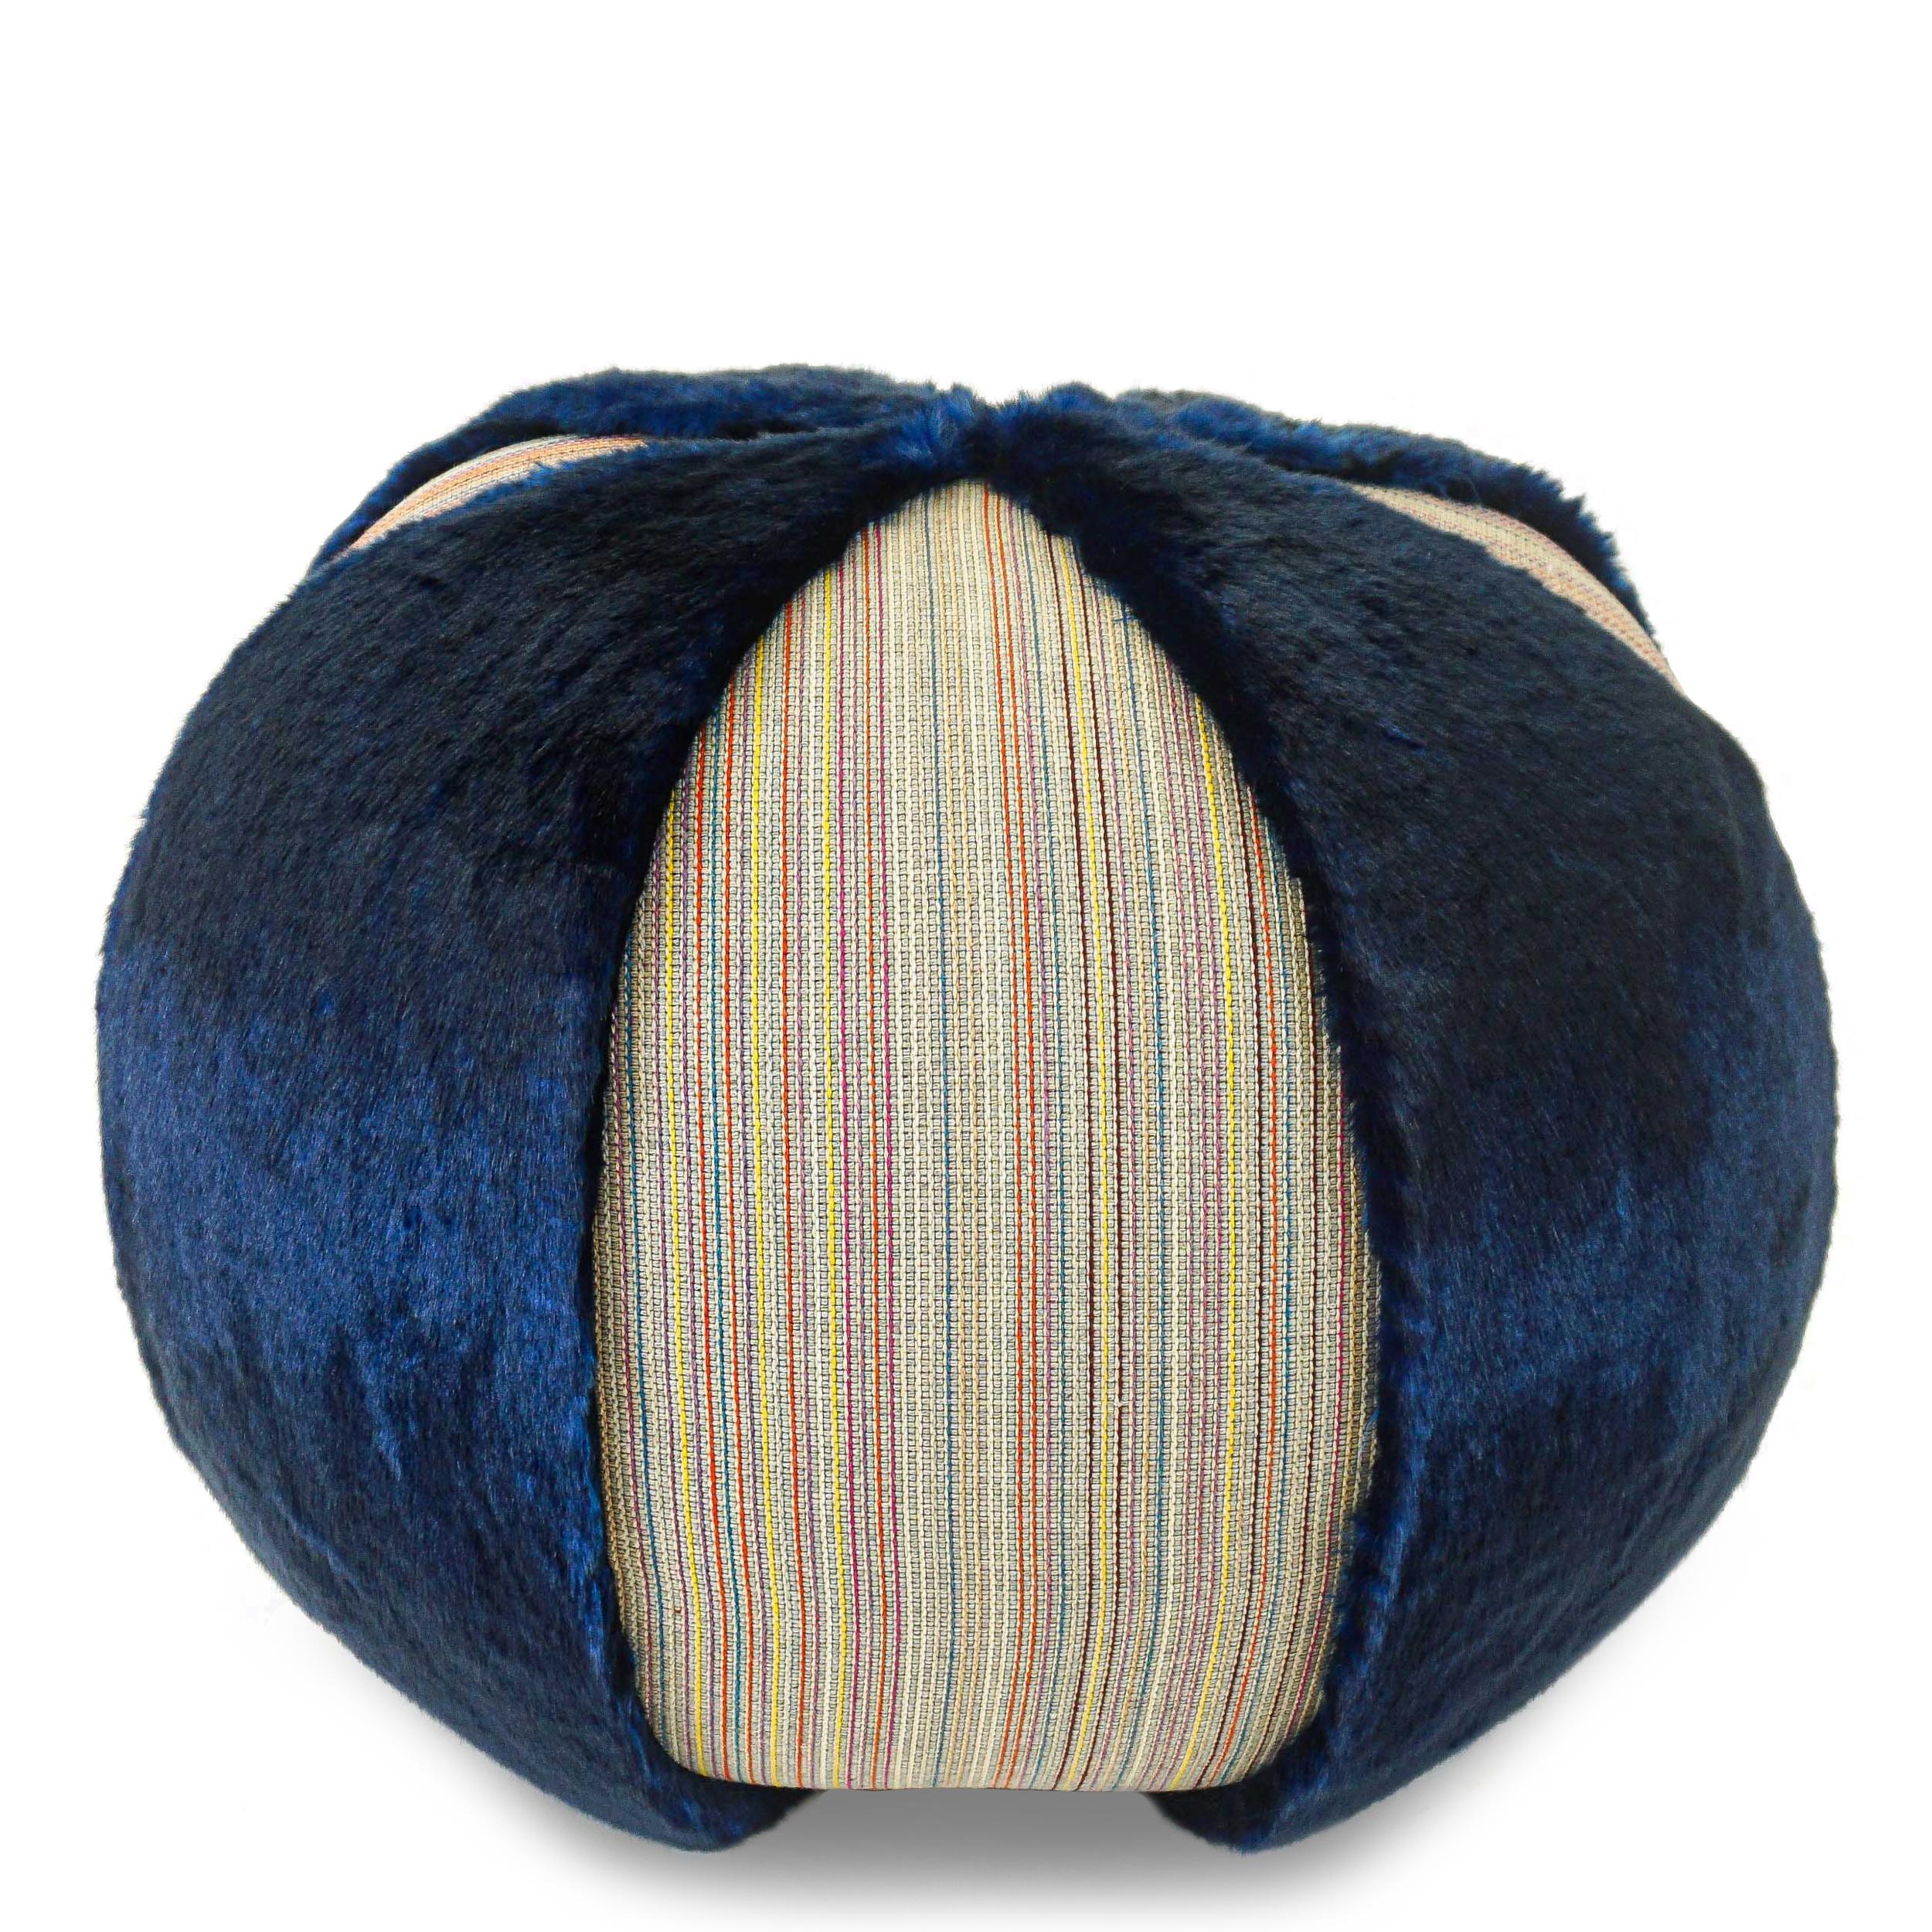 Colorful Stripe Pouf/Ottoman with Vibrant Blue Faux Fur For Sale 4